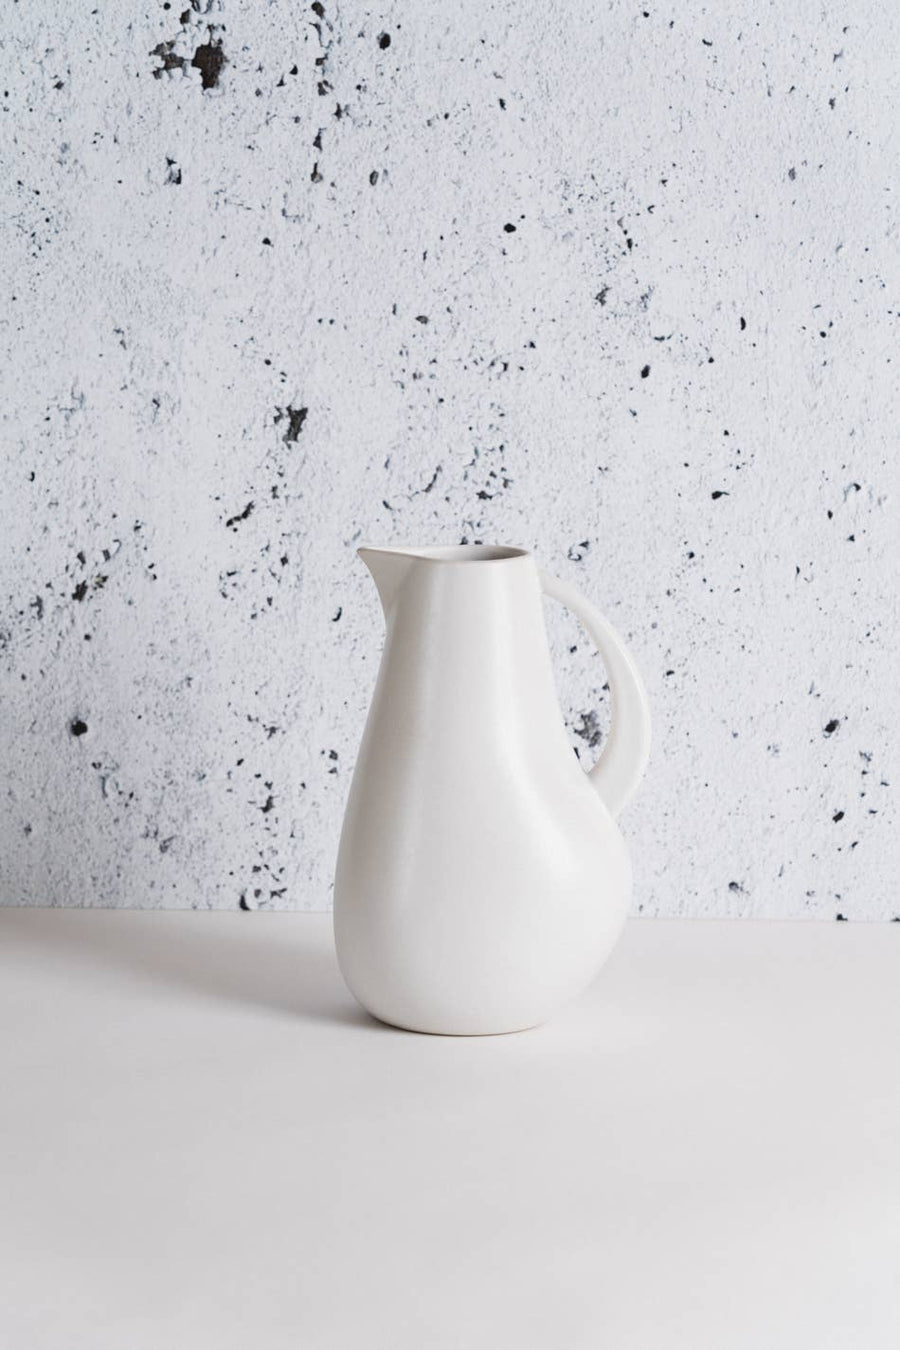 gharyan kuduo stoneware pitcher in matte white